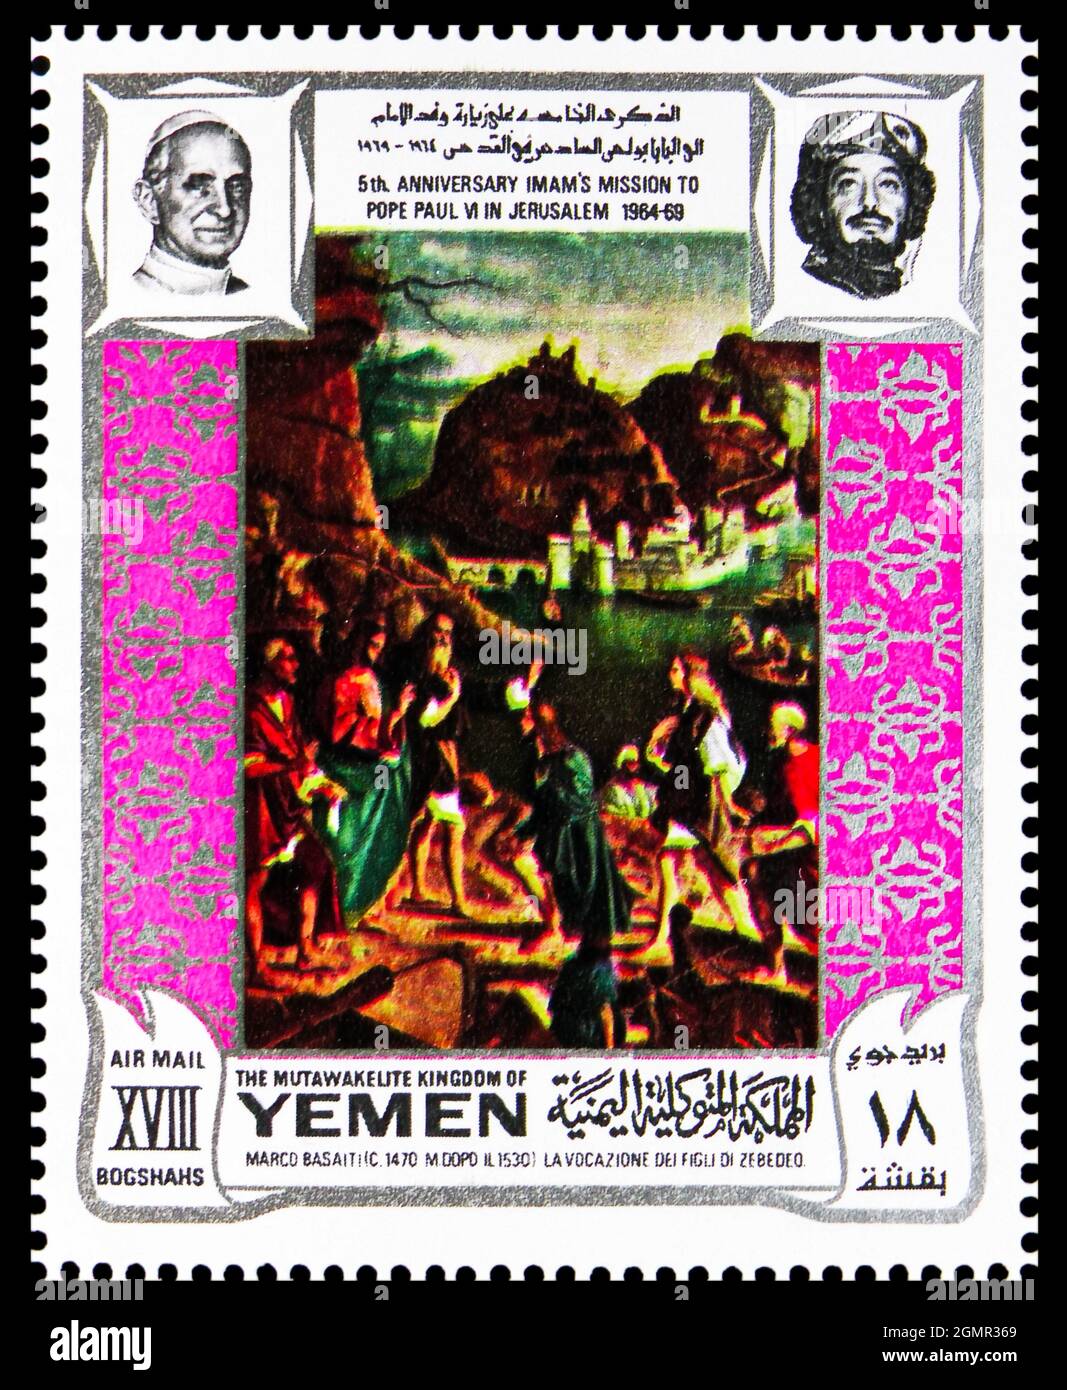 MOSKAU, RUSSLAND - 31. JULI 2021: Briefmarke im Jemen zeigt La vocazione dei figli di Zebedeo, von Basaiti, 5. Jahrestag von Paul VI. Besuch t Stockfoto